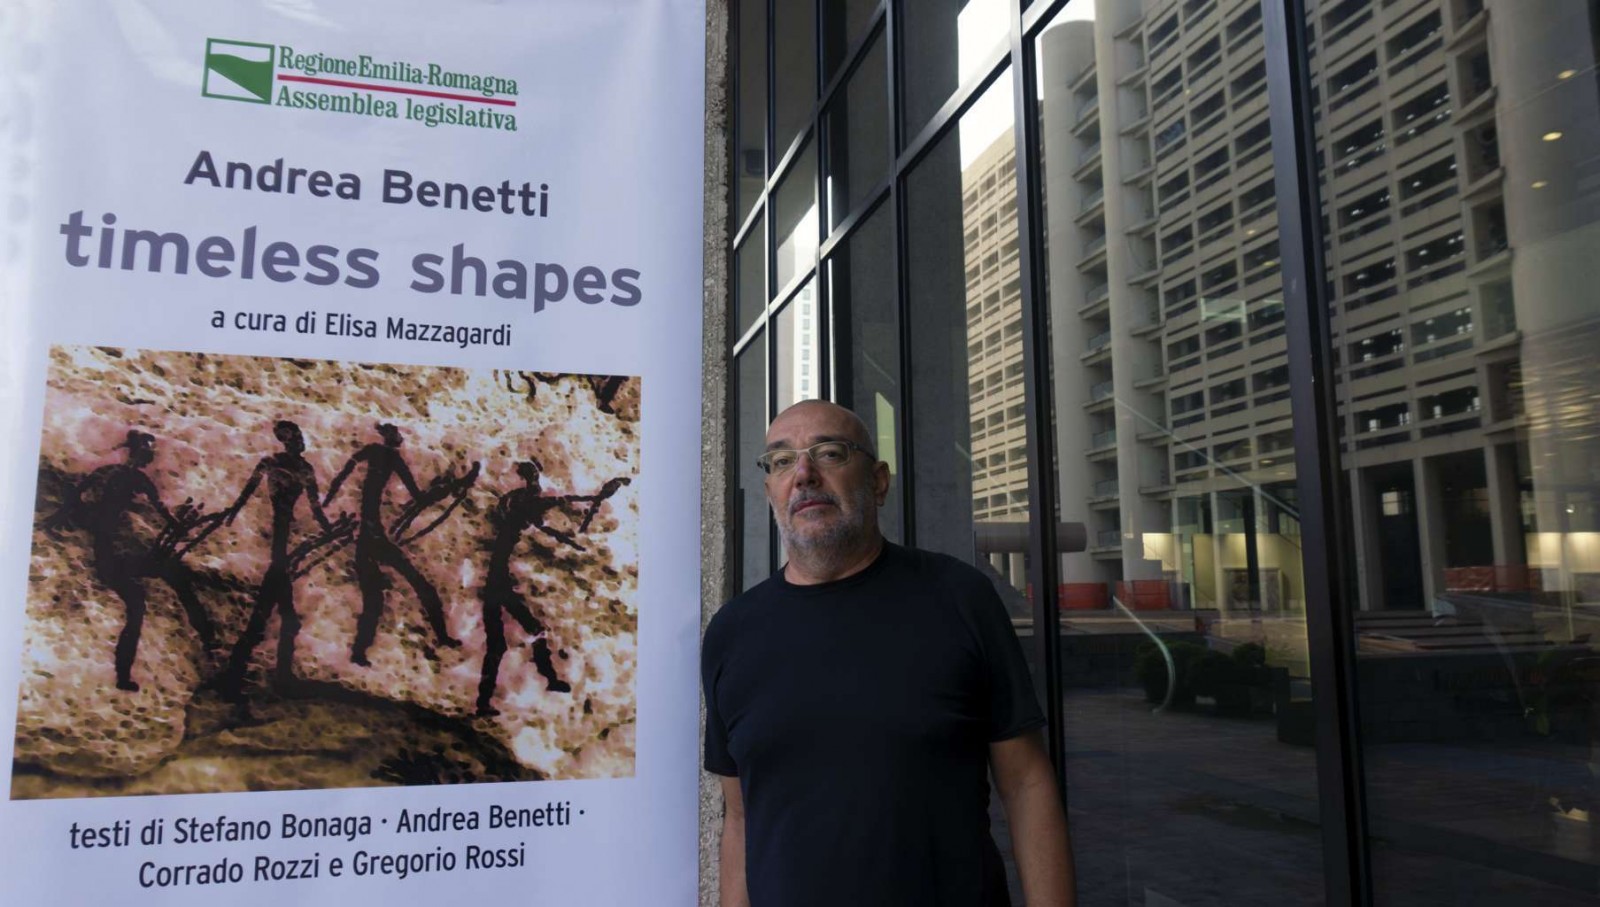 Consiglio Regionale Andrea Benetti